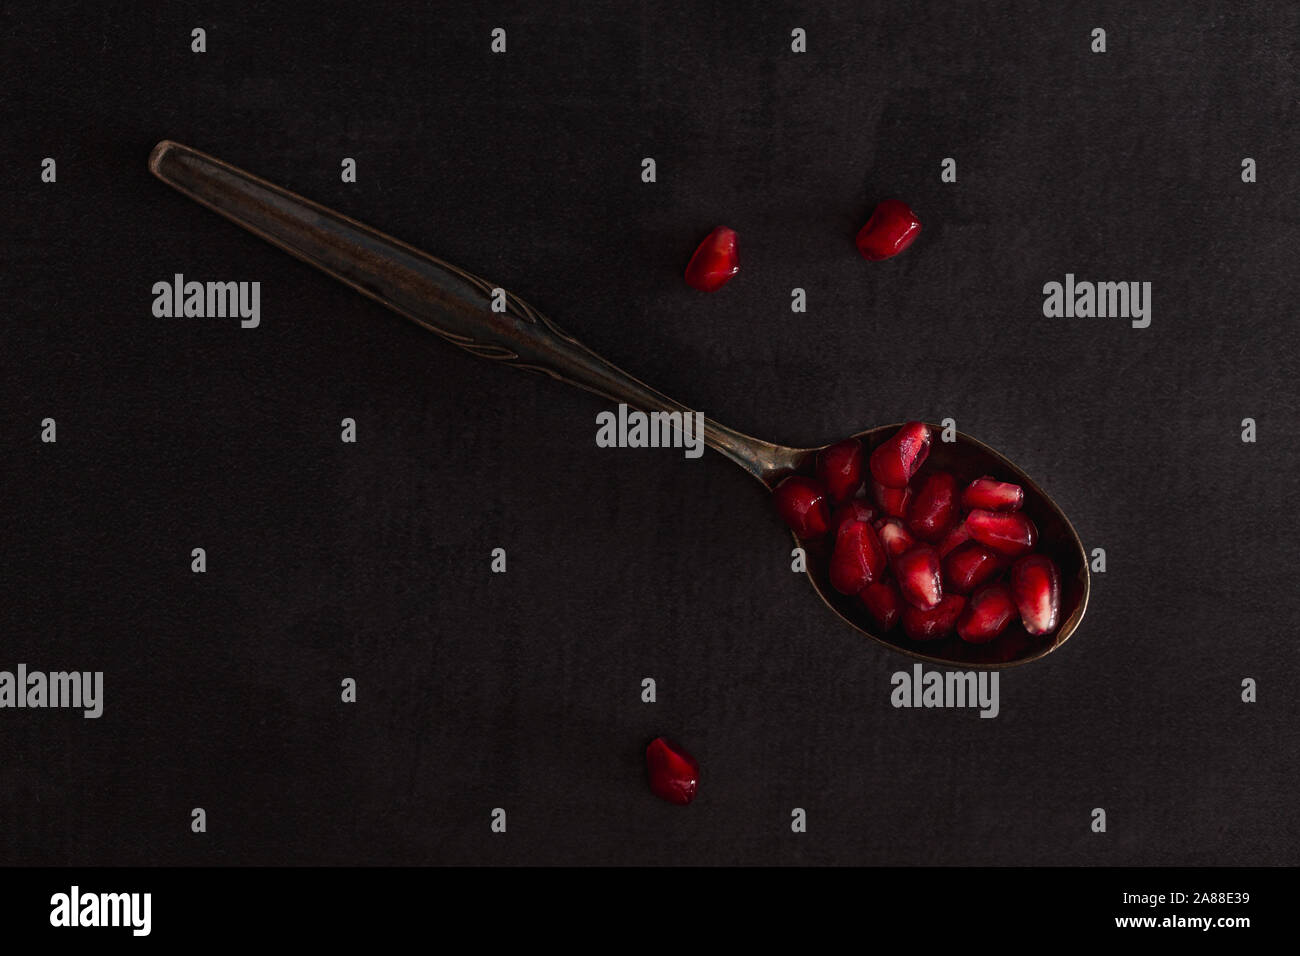 Fruits grenade fraîche avec des graines rouges sur cuillère dans un paysage sombre. Banque D'Images